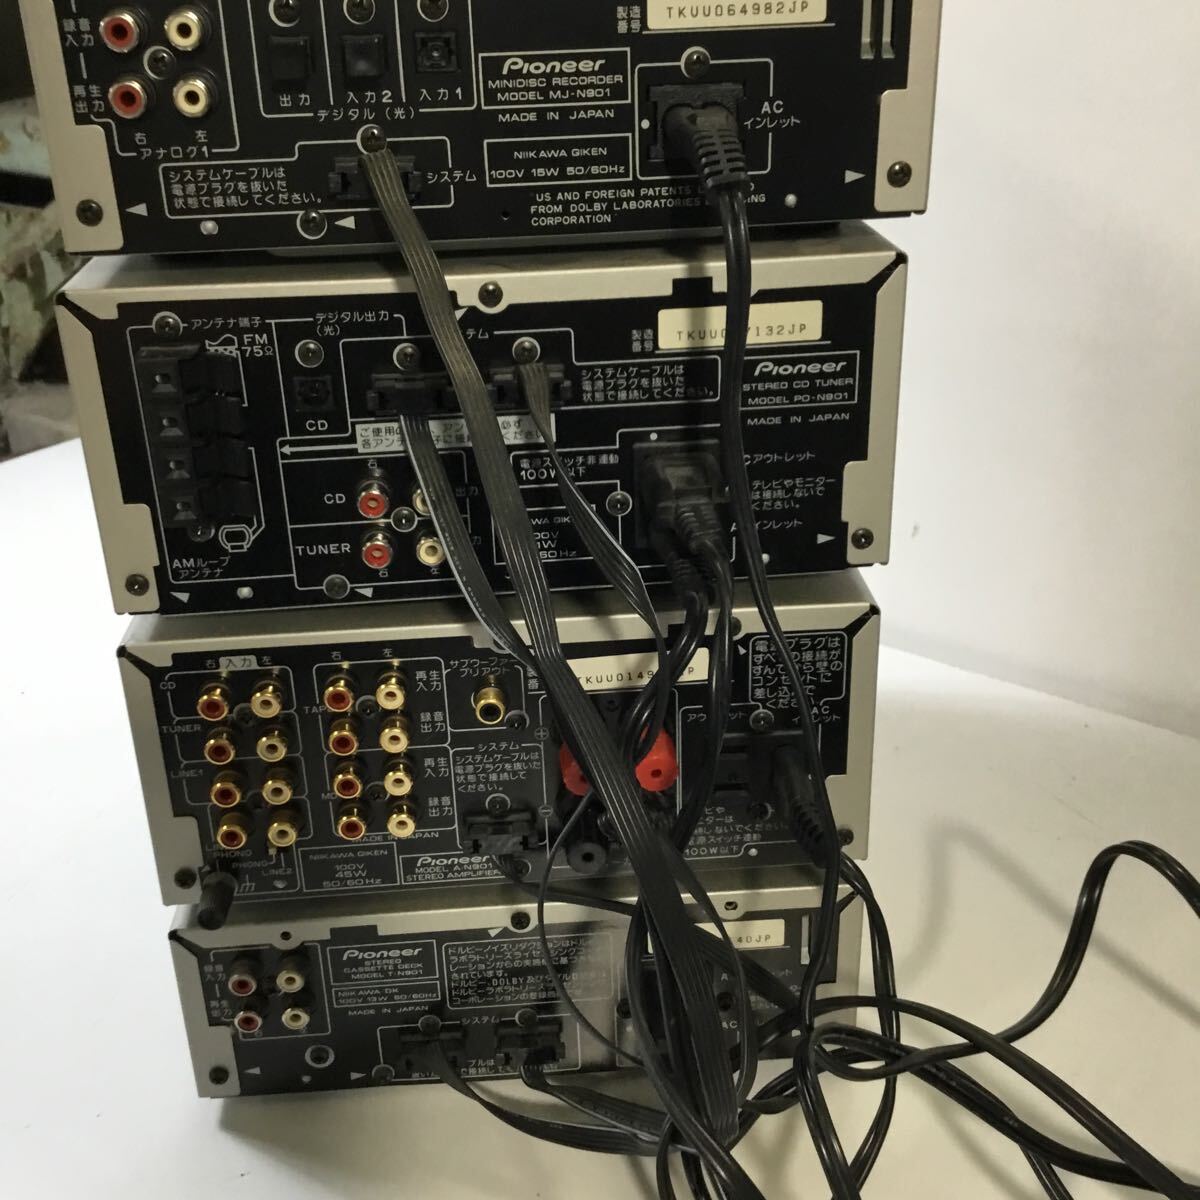 Pioneer звуковая аппаратура 6 позиций комплект динамик S-N901-LR усилитель Pioneer электризация подтверждено работоспособность не проверялась A-N901 Junk текущее состояние товар TS5Z